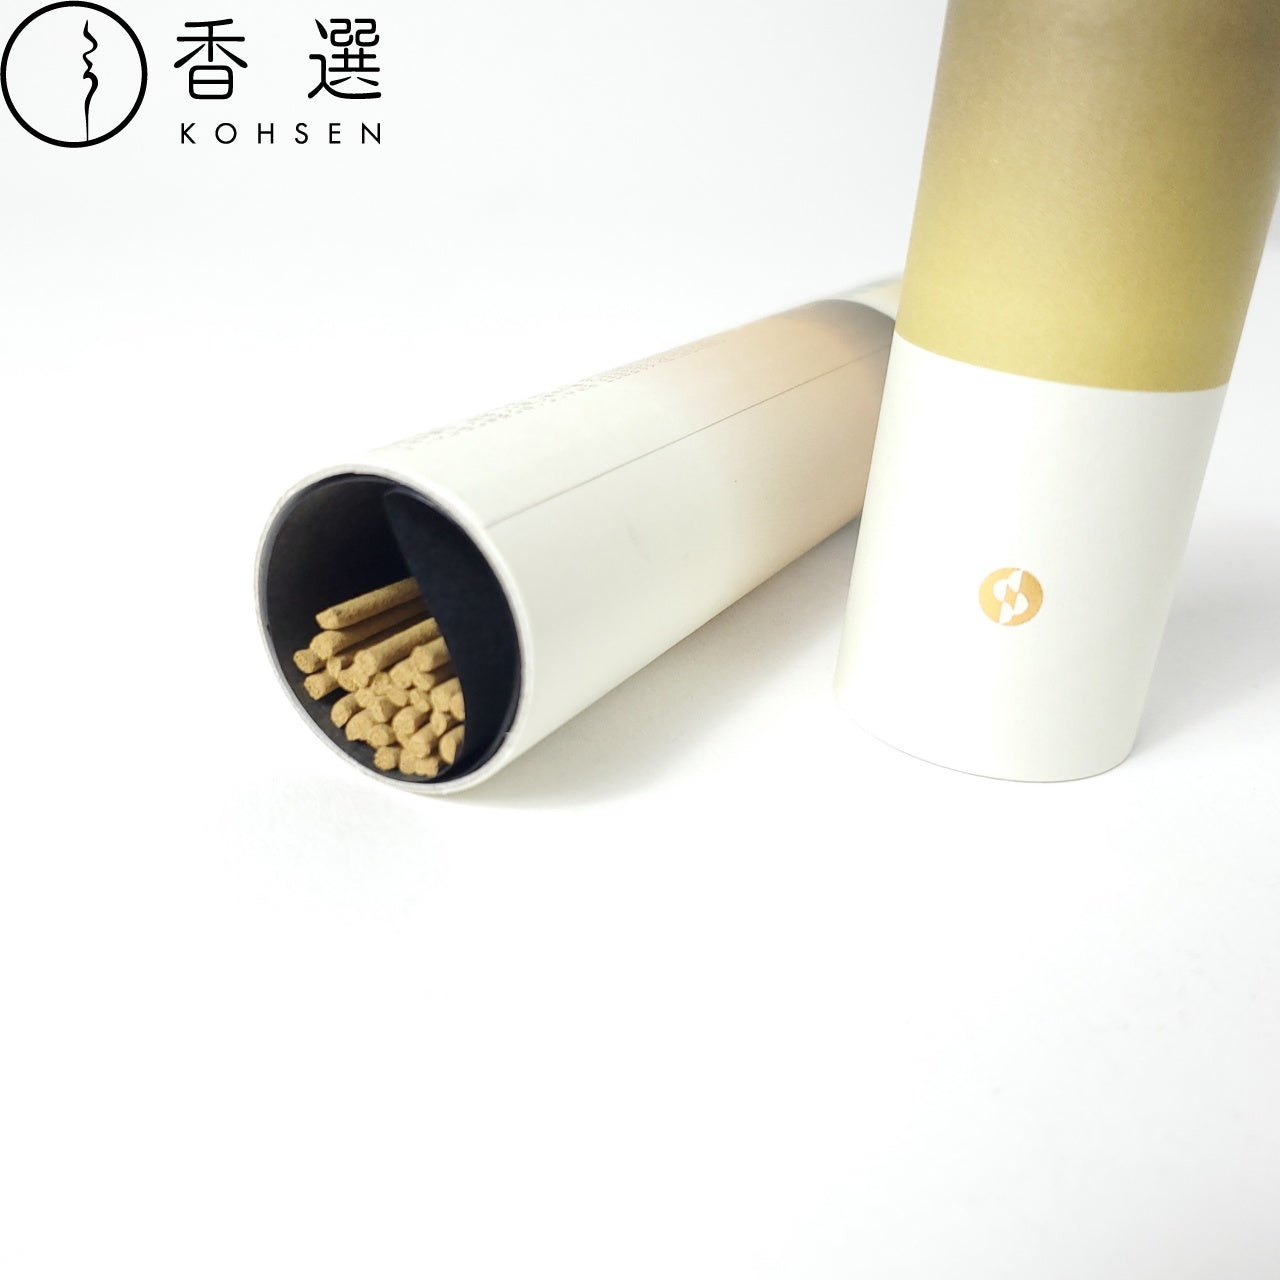 日本香堂 セントスケープ インセンス30本入 柚子&ベルガモット 紙筒 スティック お香  日本製 Scentscape incense